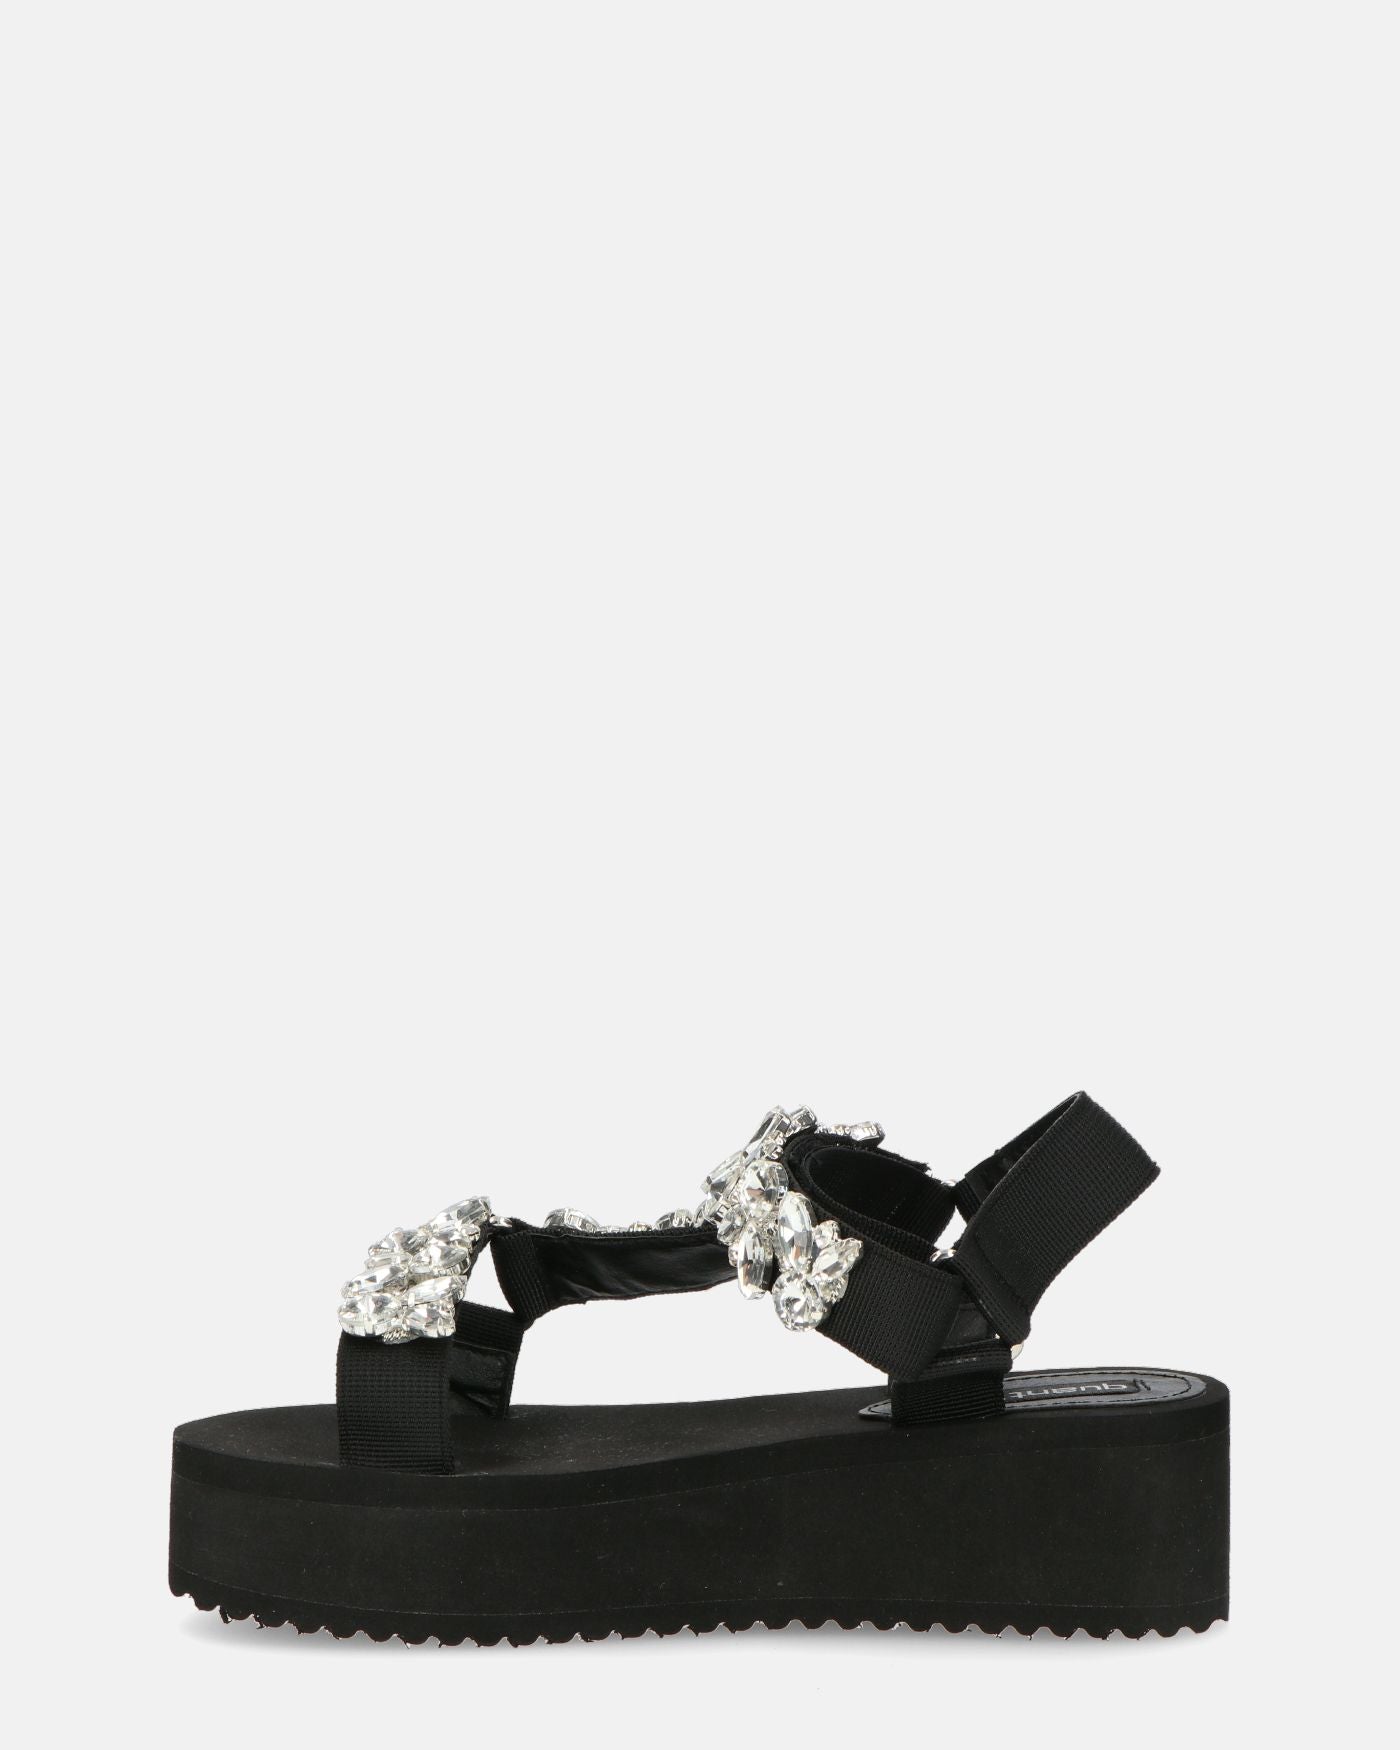 LIZIE- sandalo con plateau in camoscio nero e gemme